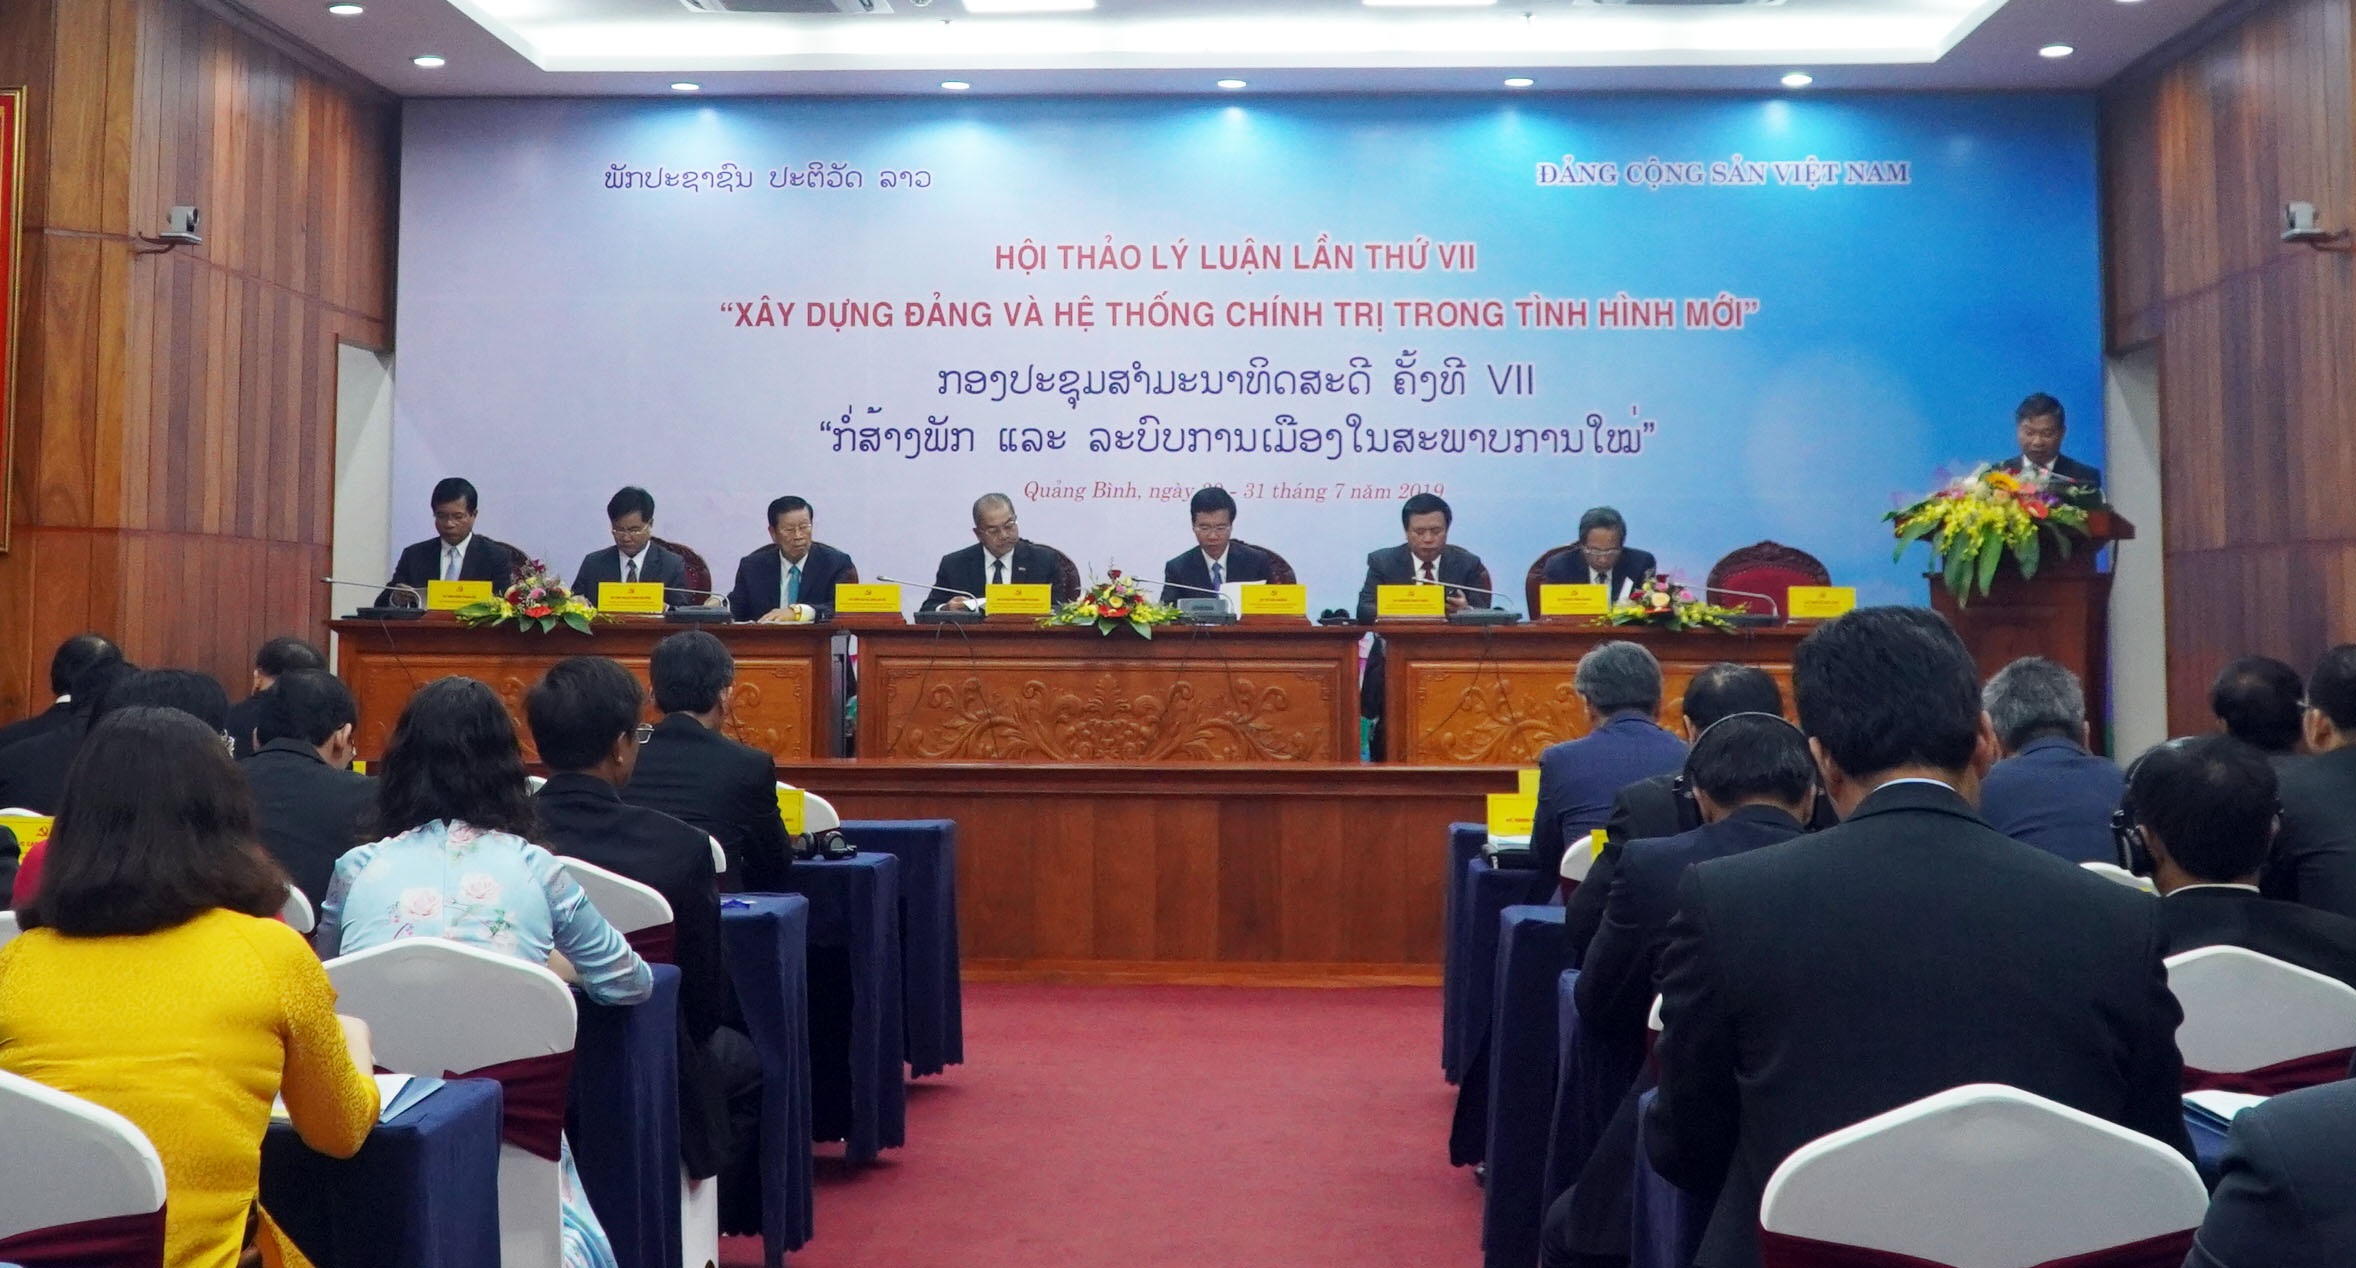 Việt Nam - Lào tổ chức hội thảo xây dựng Đảng và hệ thống chính trị